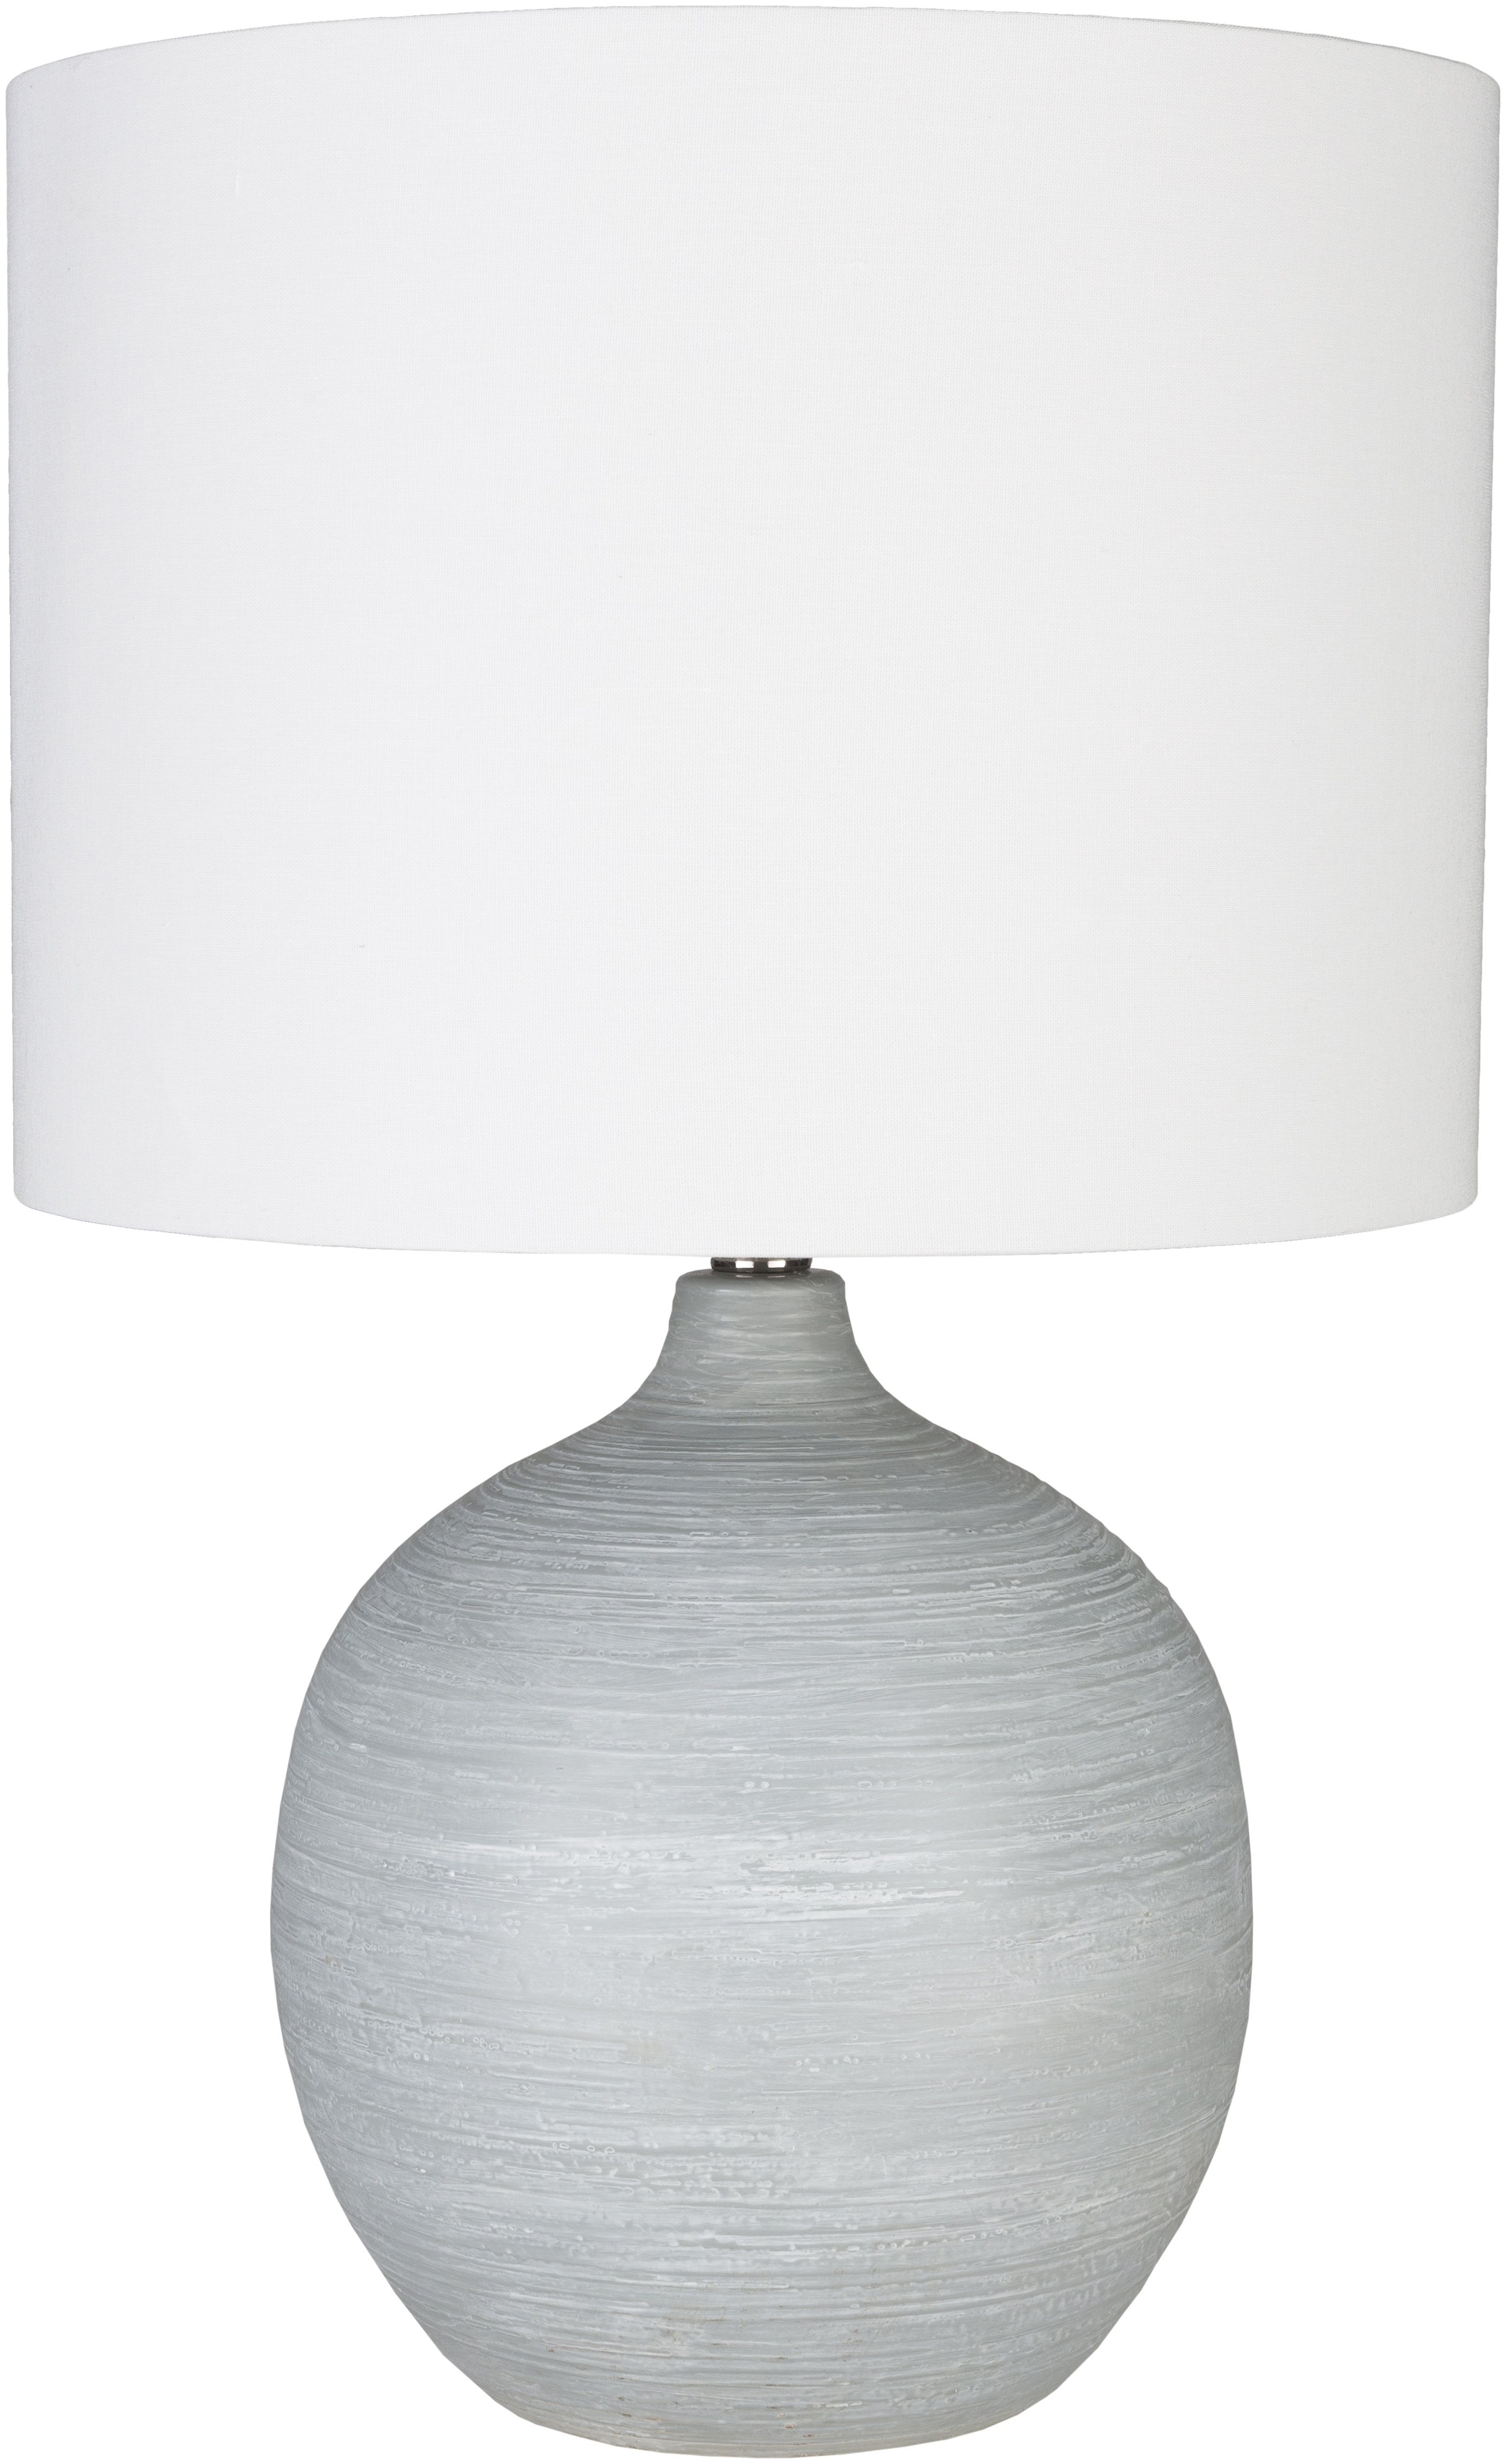 Burke Table Lamp - Image 0